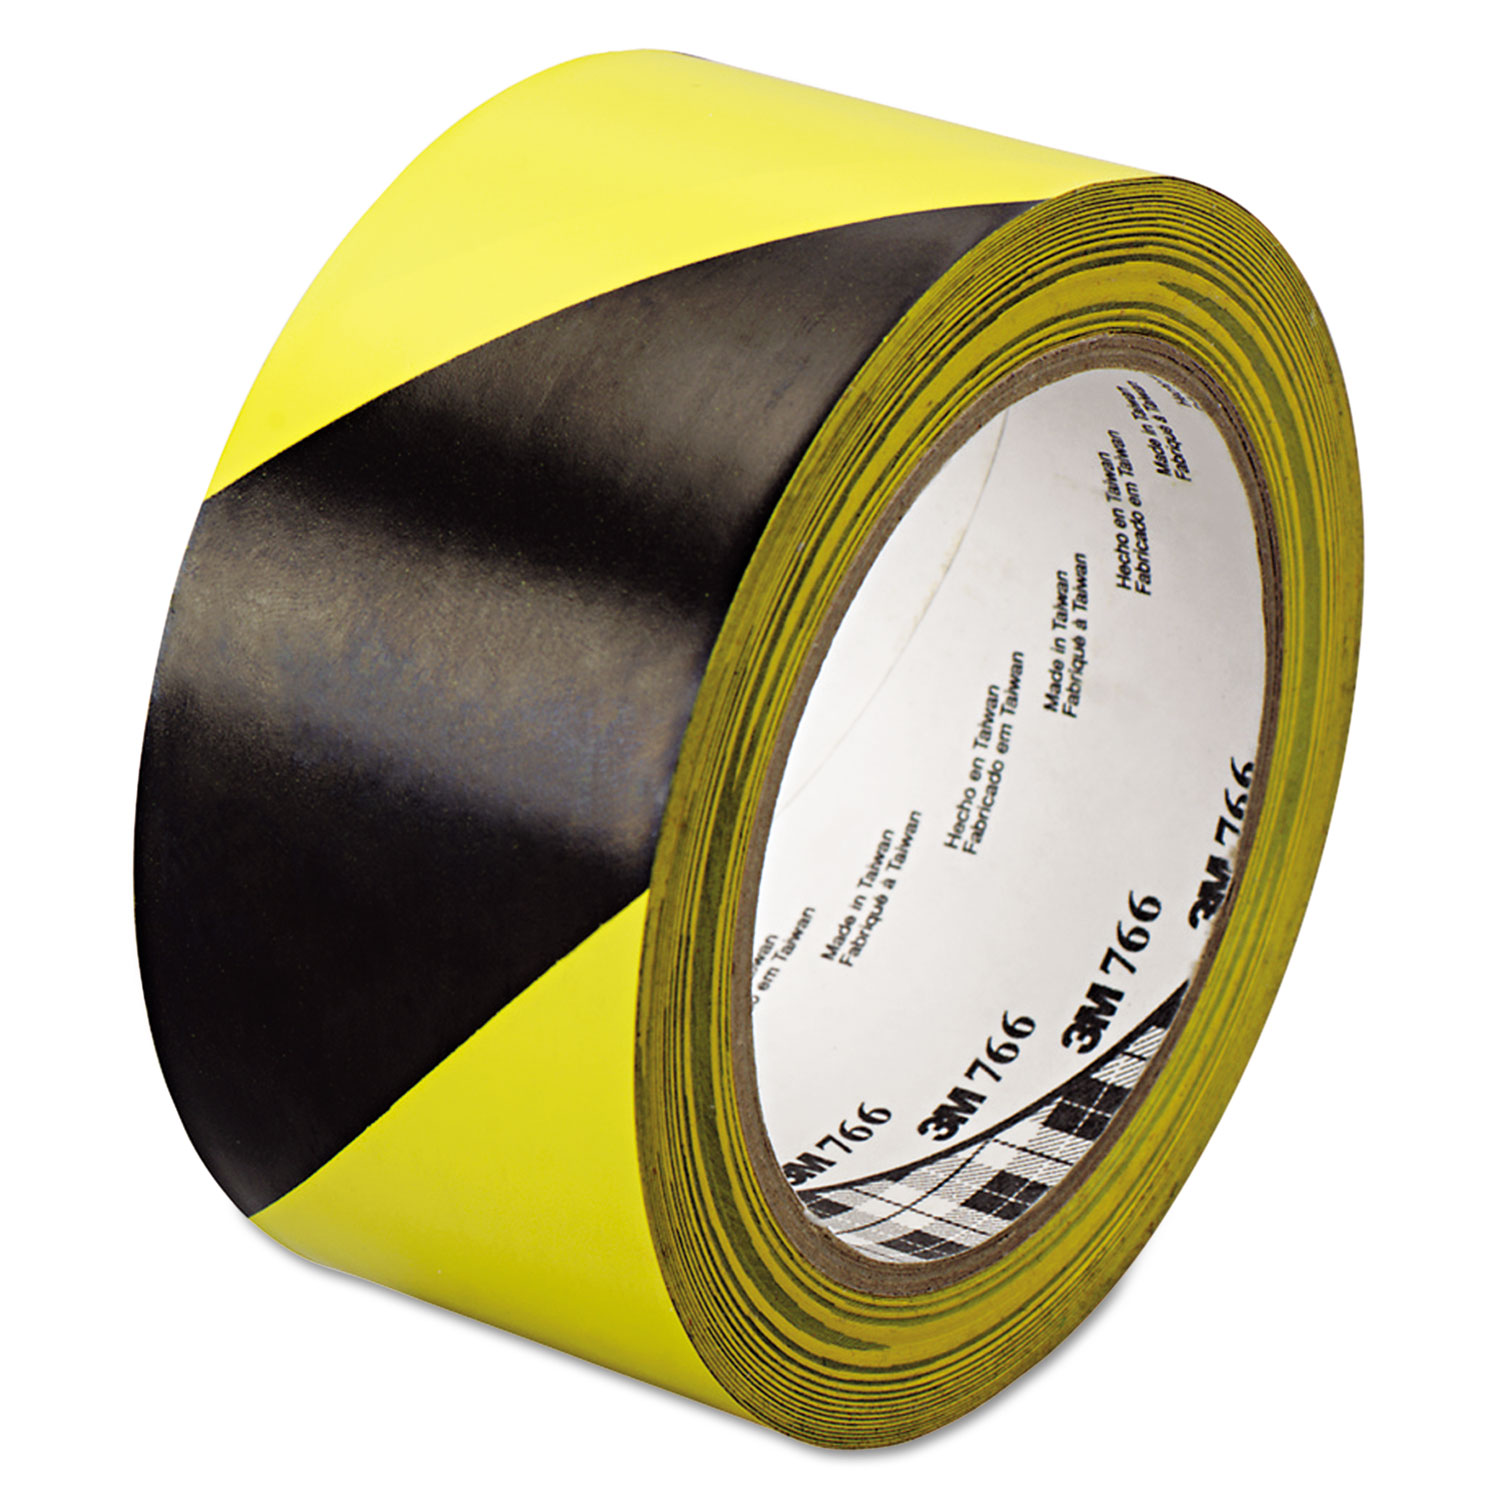 766 Hazard Warning Tape, Black/Yellow, 2 x 36yds